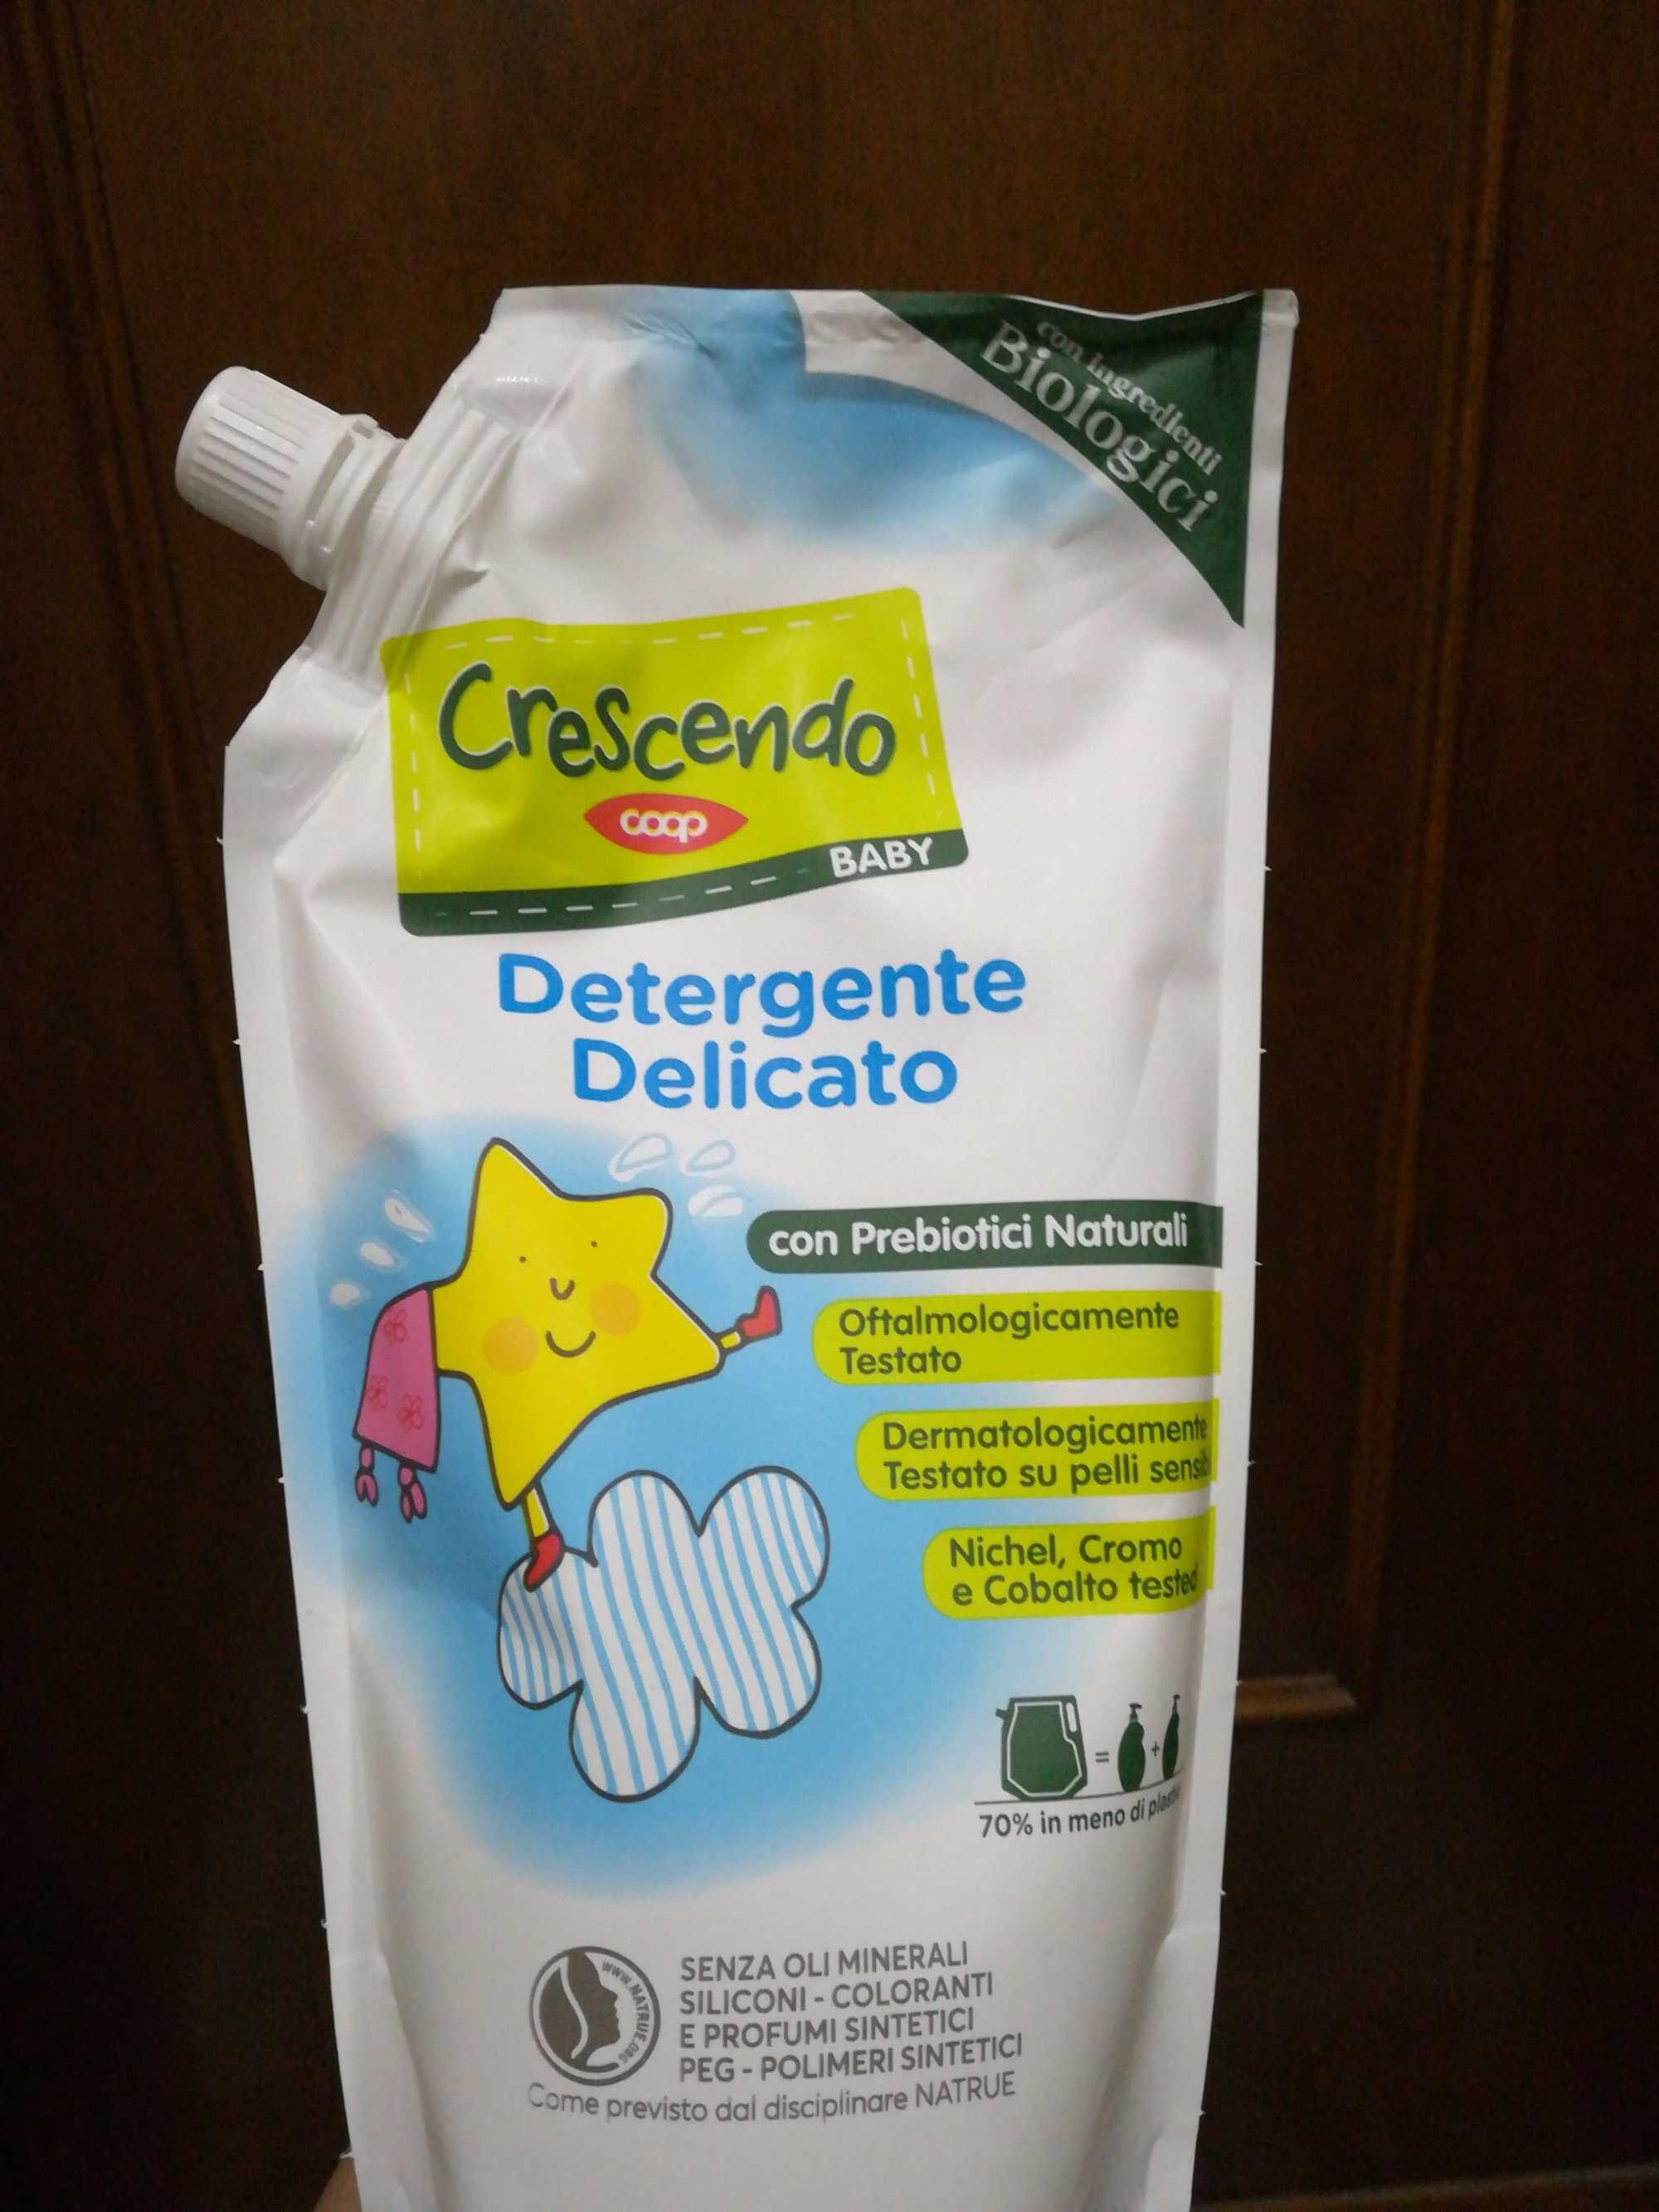 Detergente Delicato - Produkto - it